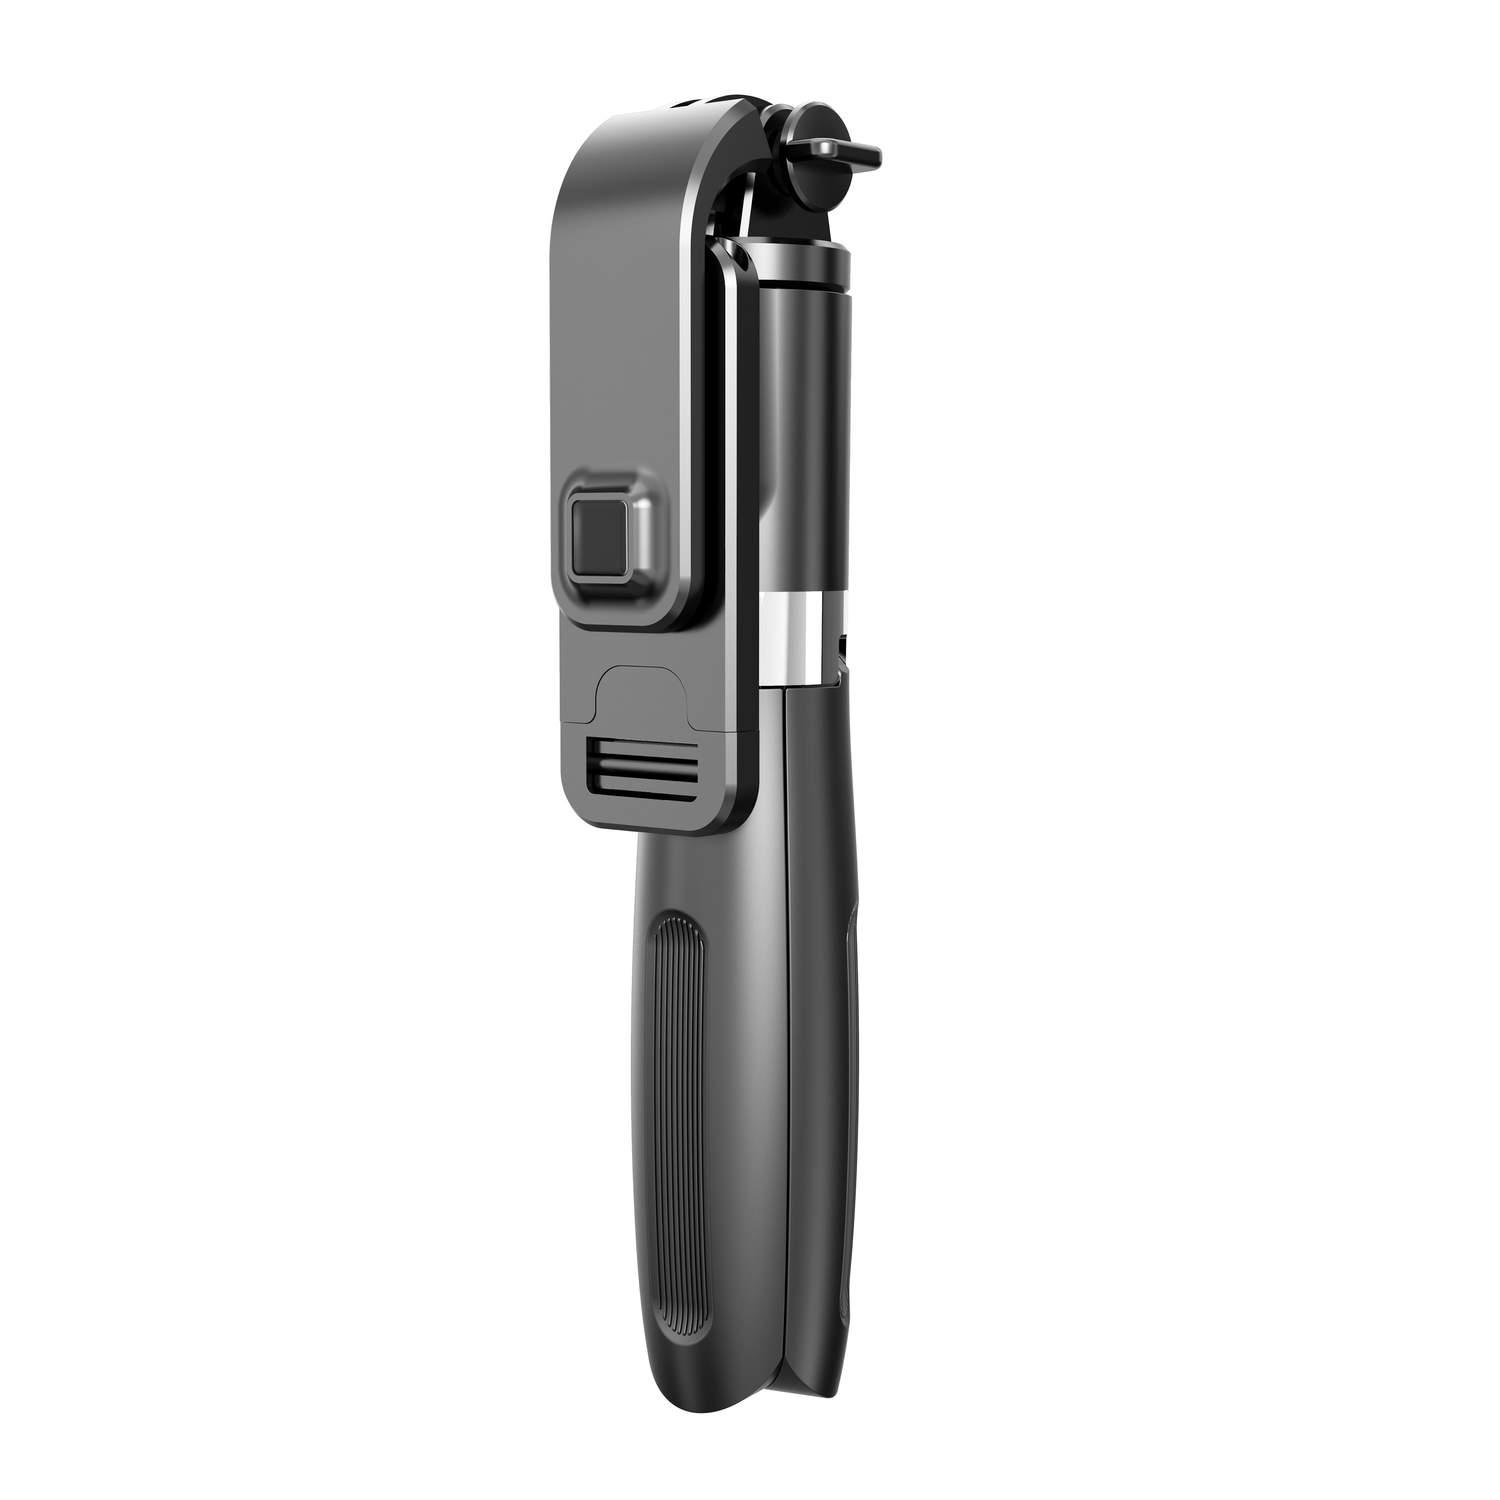 INF Selfie-Stick/Handystativ Gopro-kompatibe Kamera- Selfie-Stick, und schwarz mit Fernbedienung